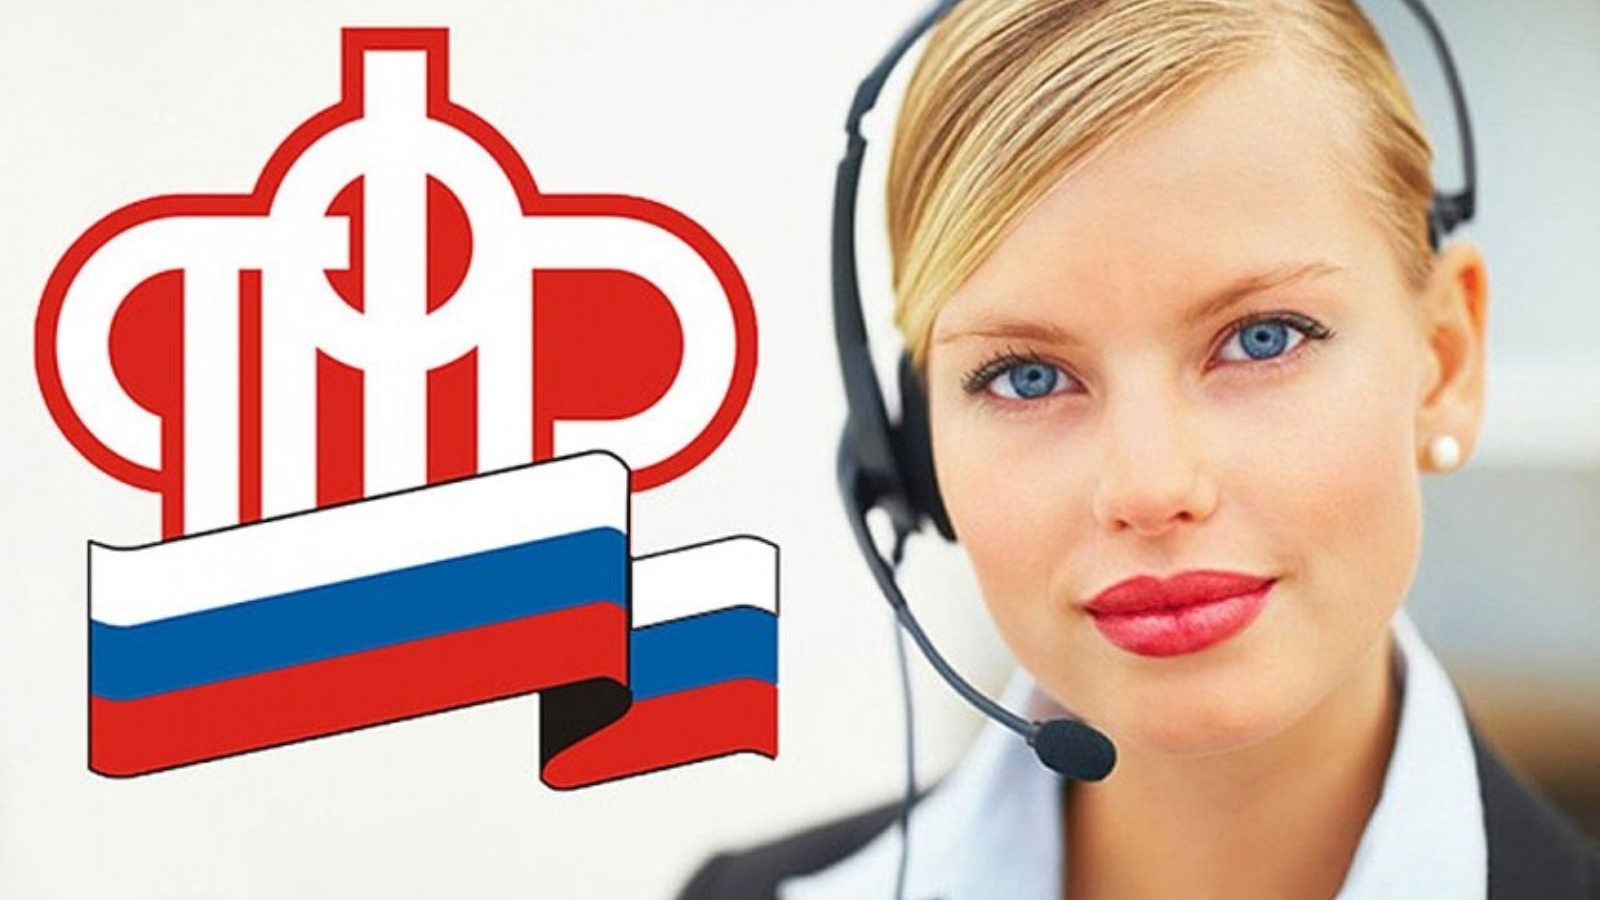 Единый телефон пенсионного фонда россии